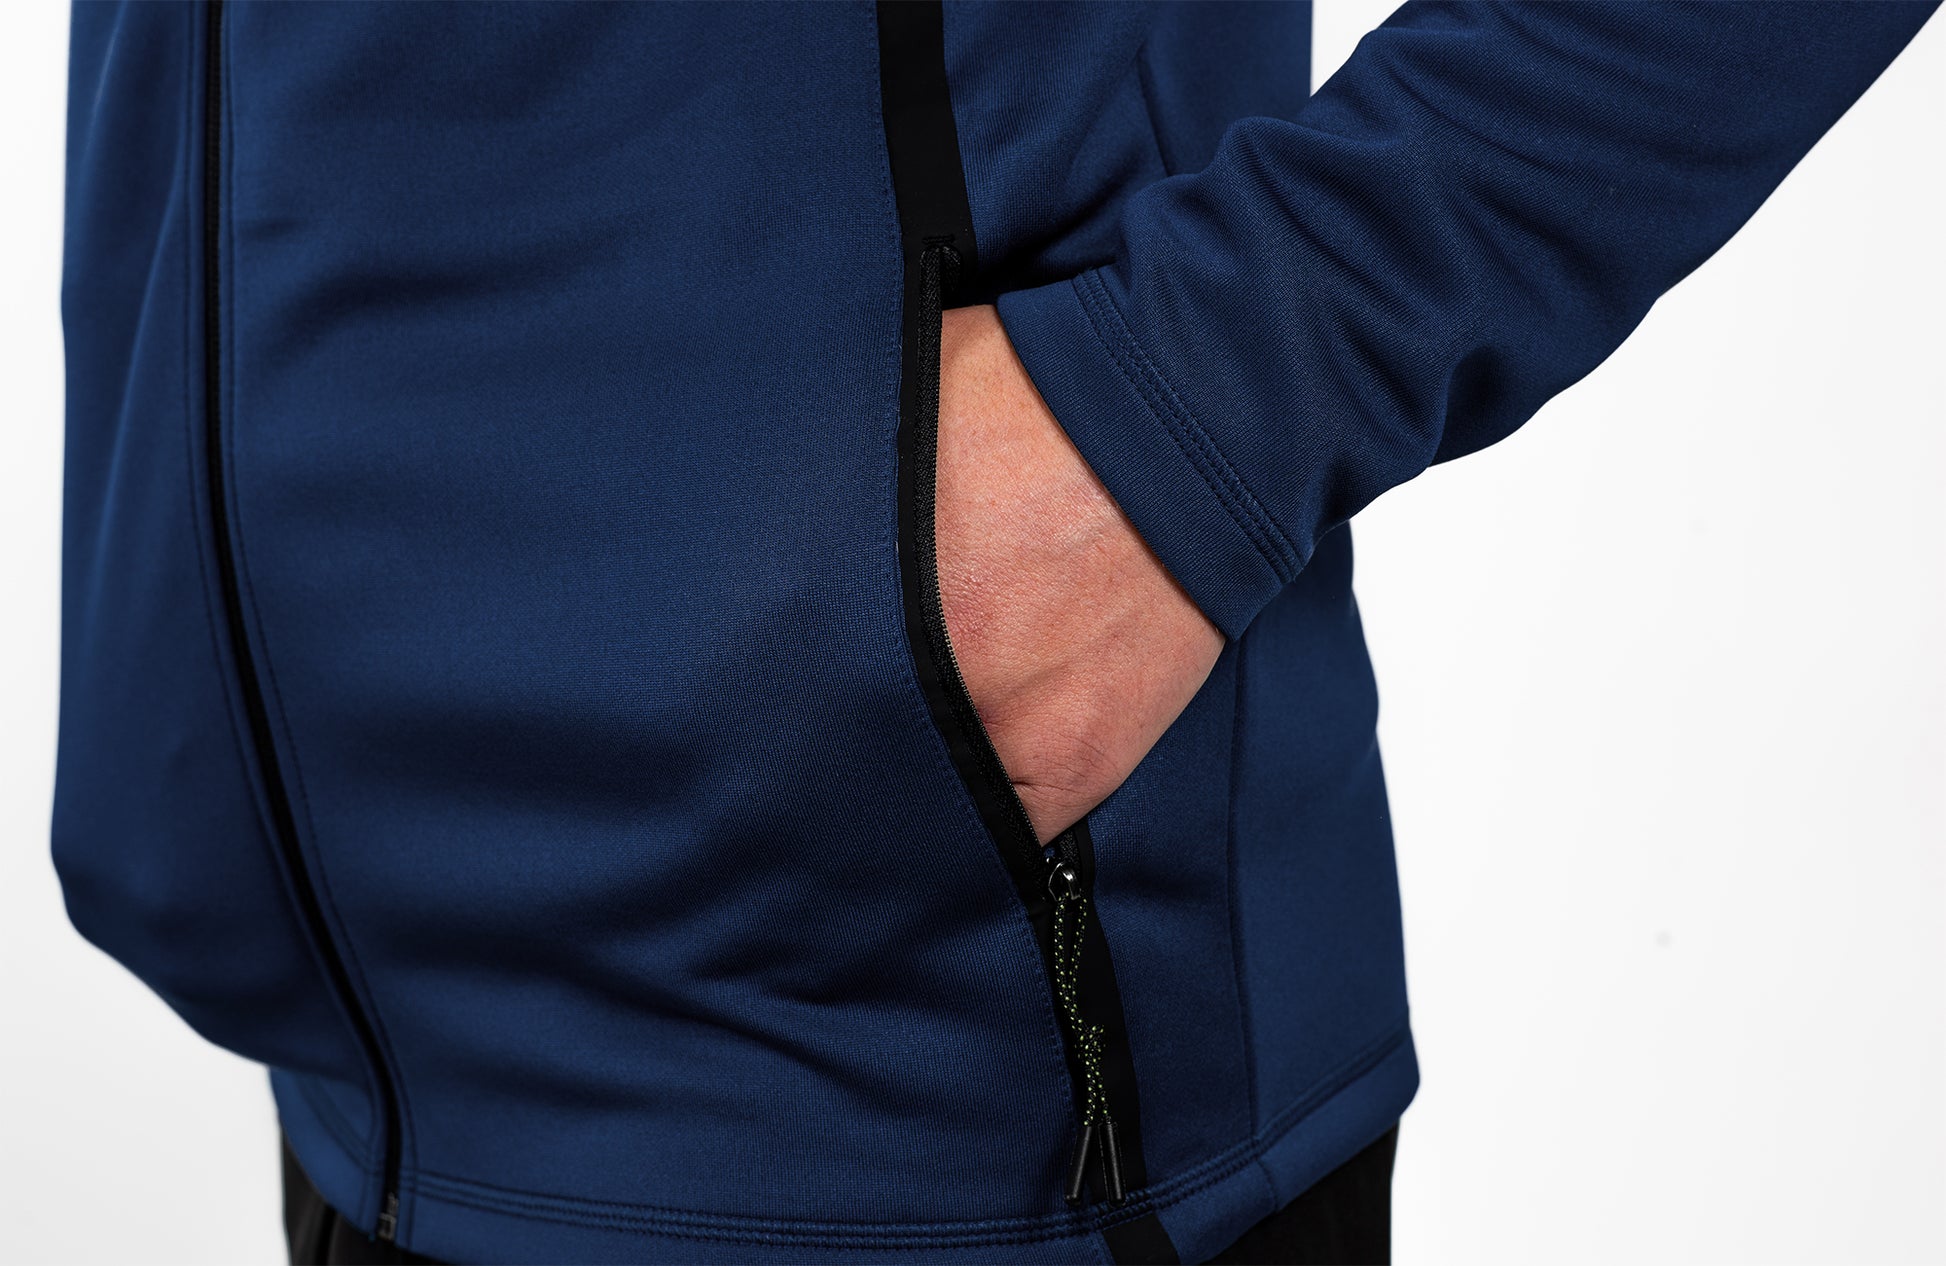 Relay Zipper Navy - Mens Jacket - Sports Cartel